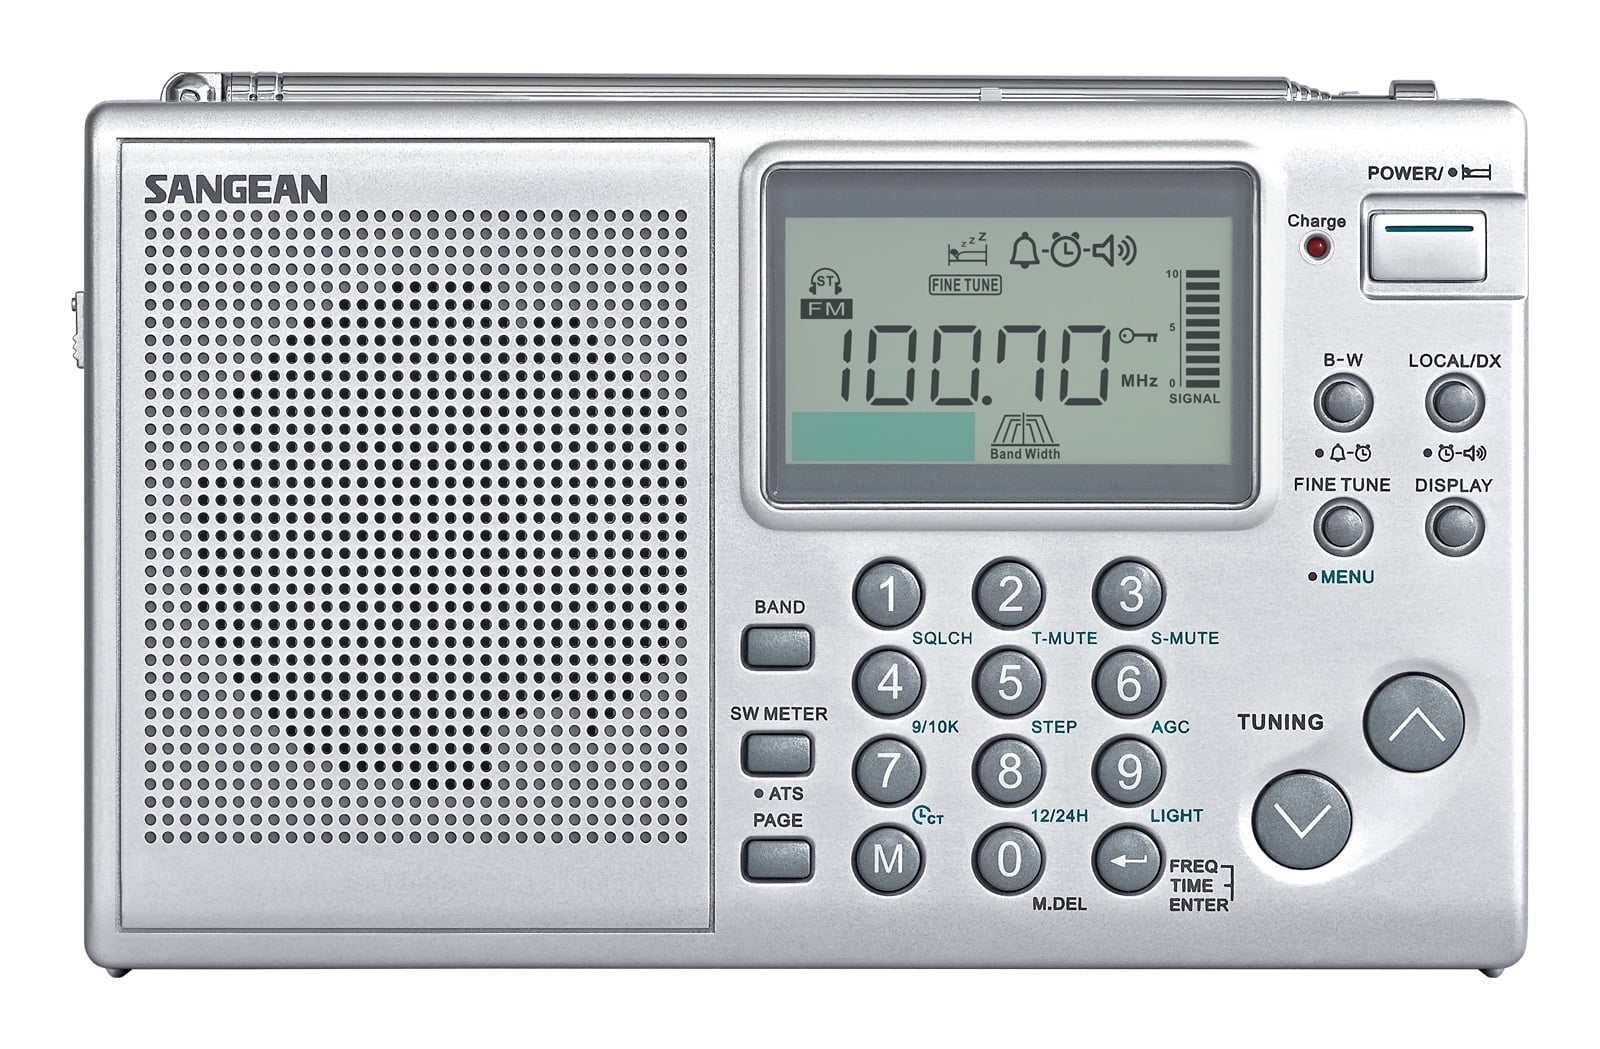 Buy Radio multibanda pll dsp fm/sw/mw/lw online